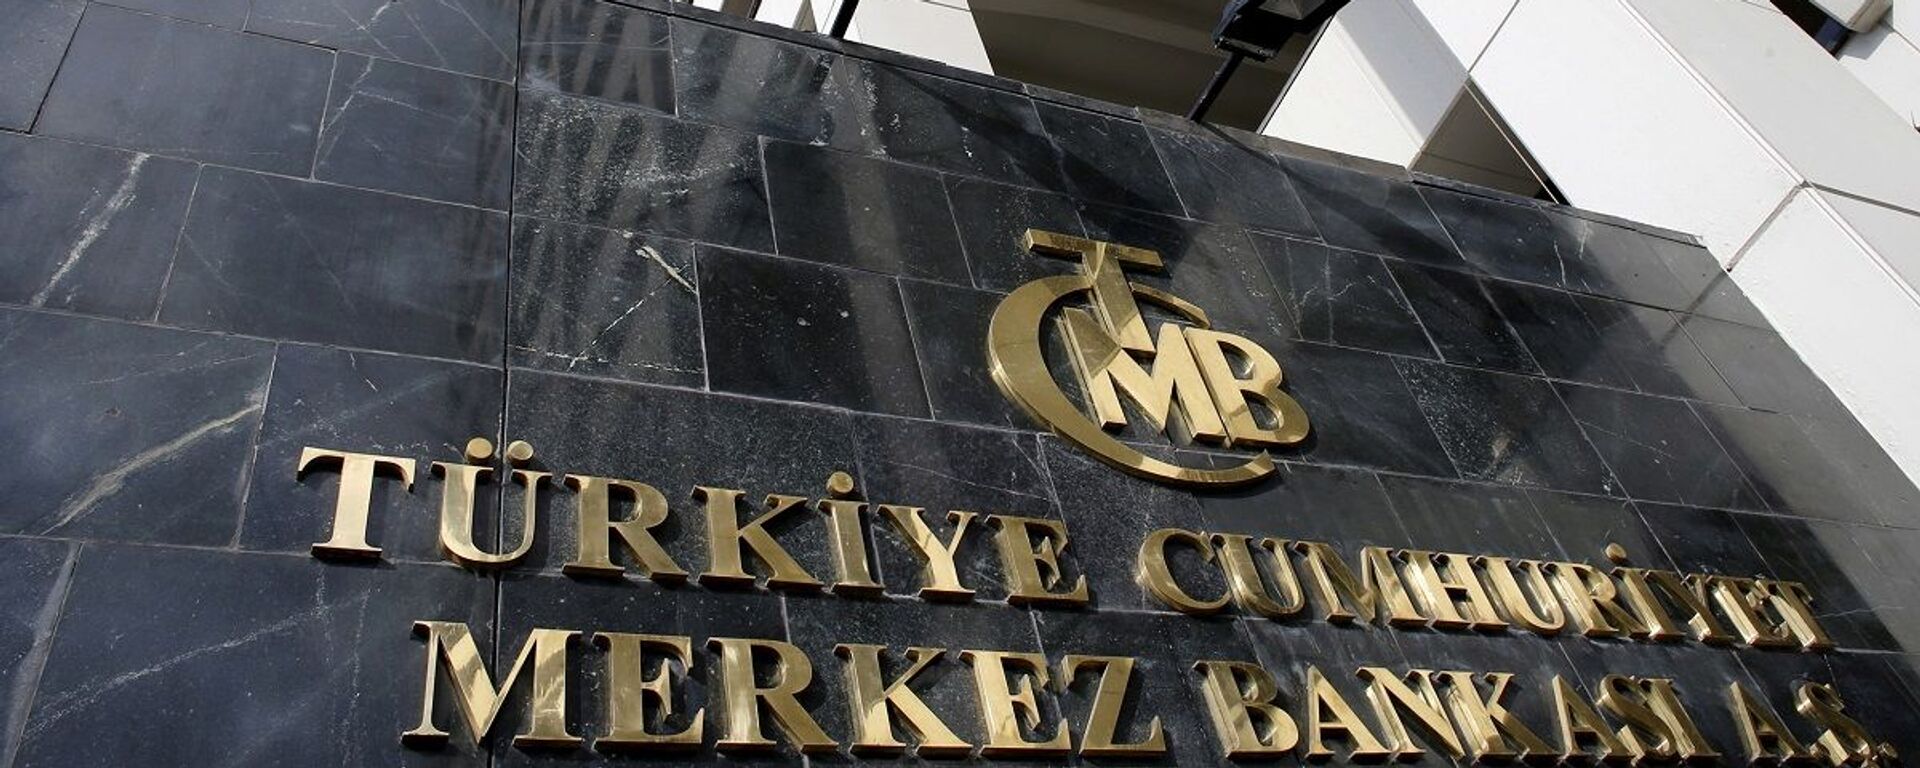 Merkez Bankası - Sputnik Türkiye, 1920, 23.12.2021